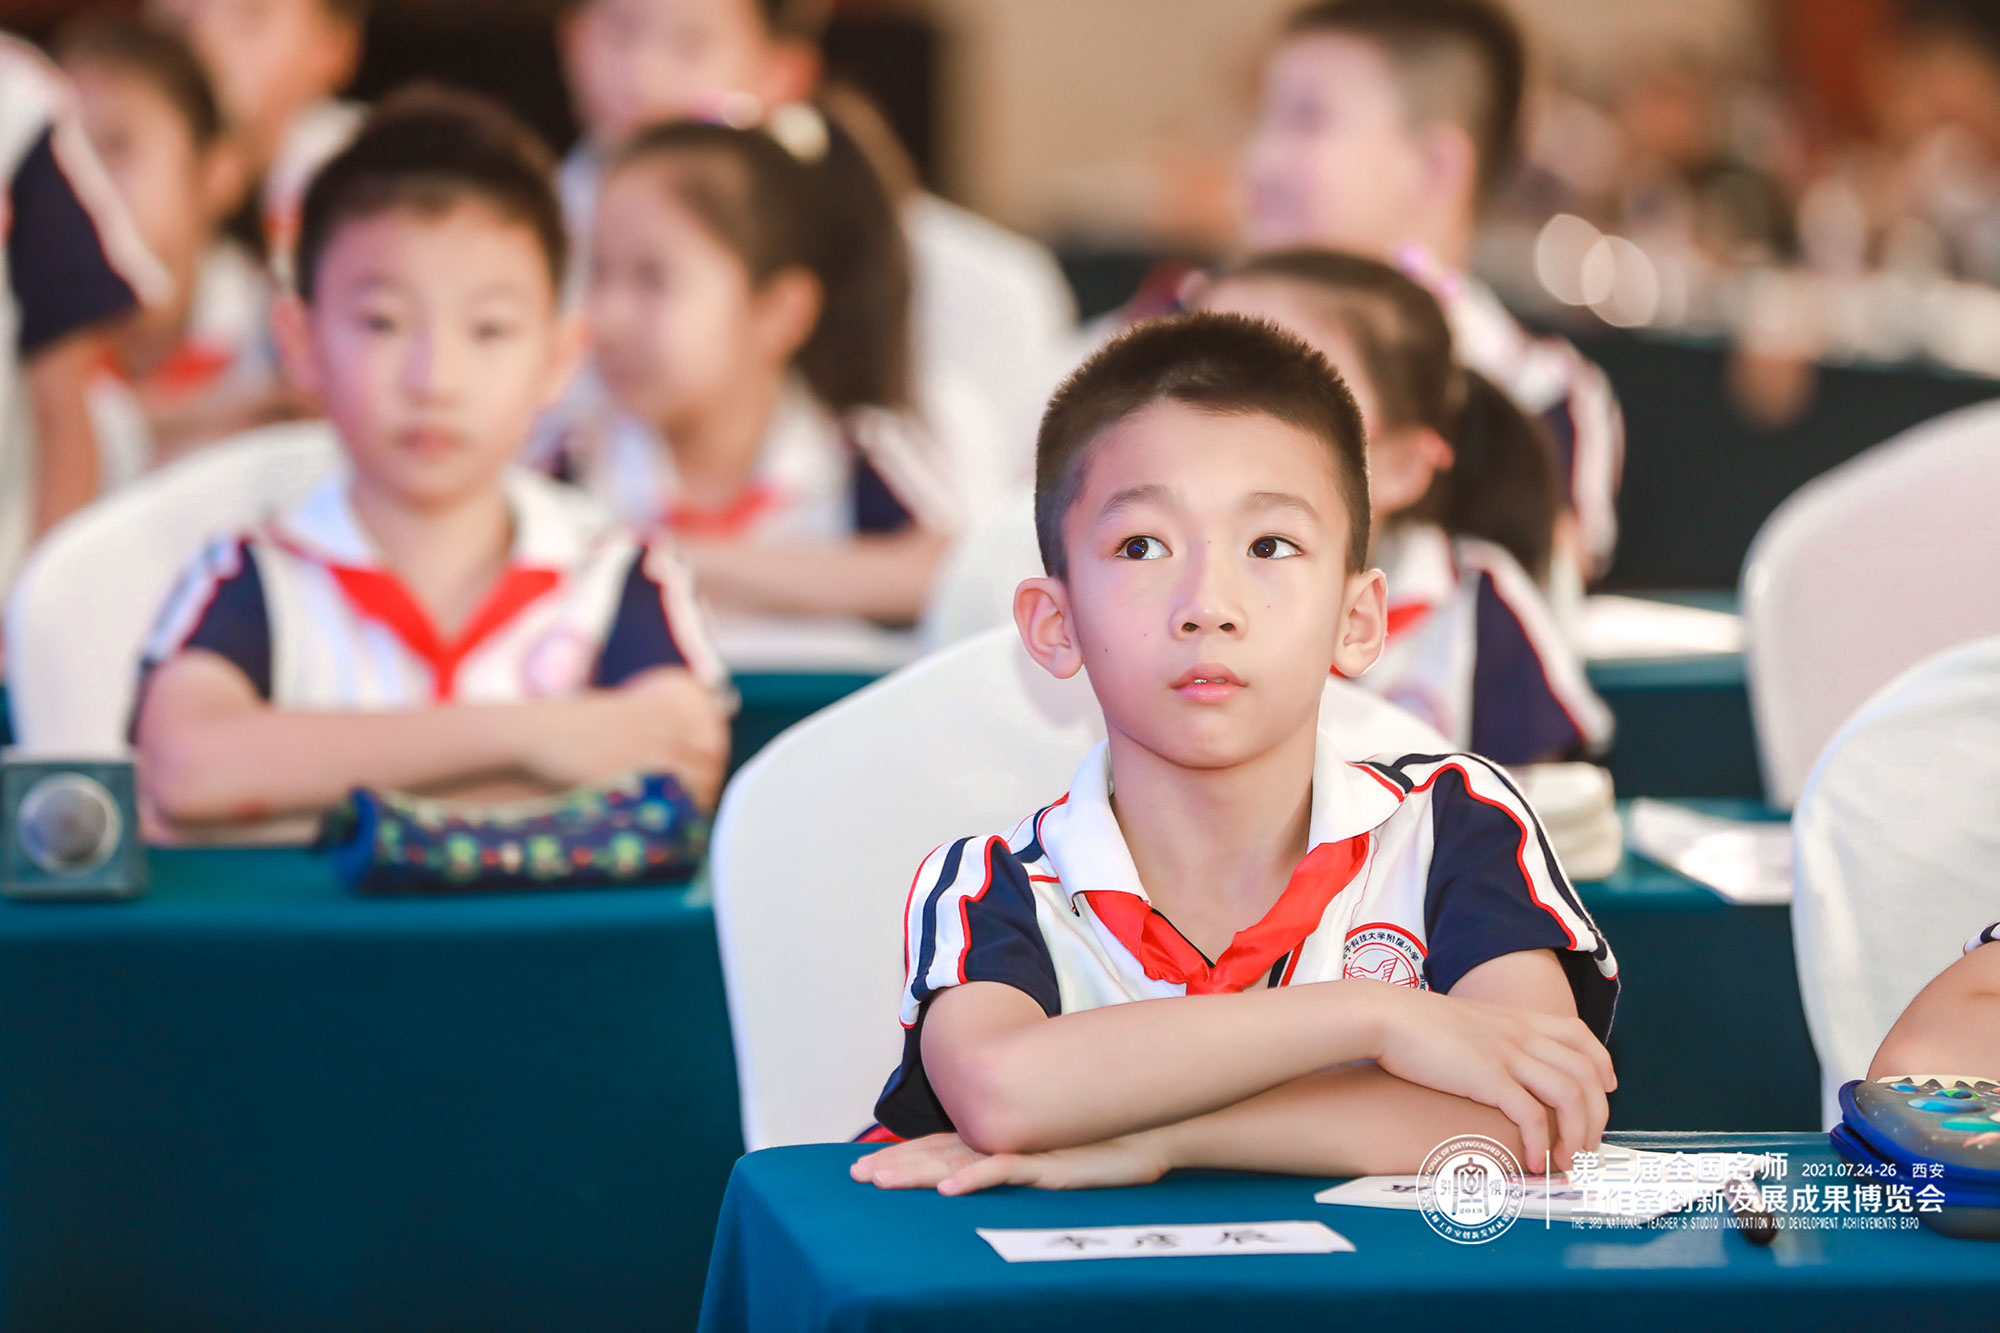 天津市红桥区教师进修学校副校长徐长青带来一堂新时代育人方式变革的课堂。课堂中徐老师以游戏的方式展示了数学中的重复，让学生在做中学，自己去发现问题和解决问题。